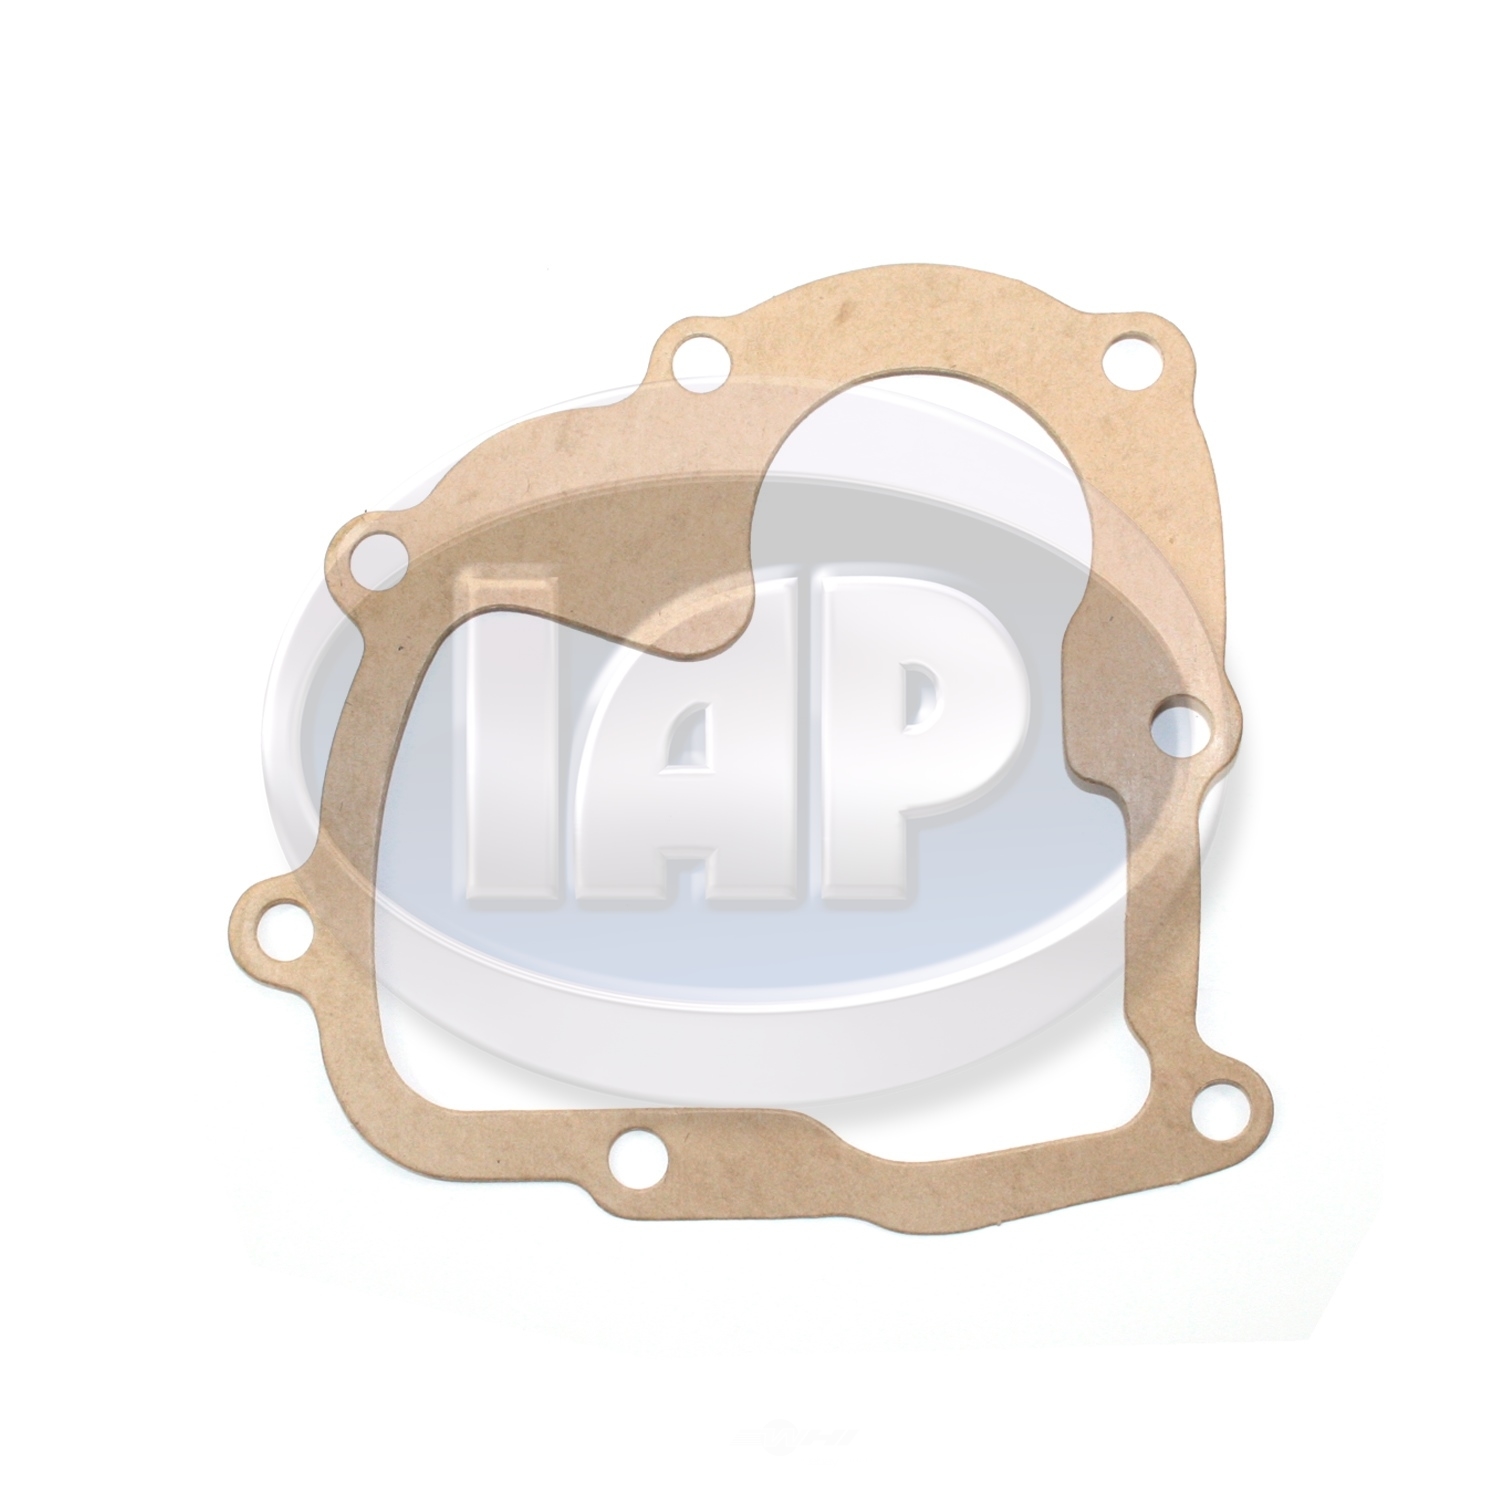 IAP/KUHLTEK MOTORWERKS - Manual Transmission Side or Shift Cover Gasket - KMS 211301215